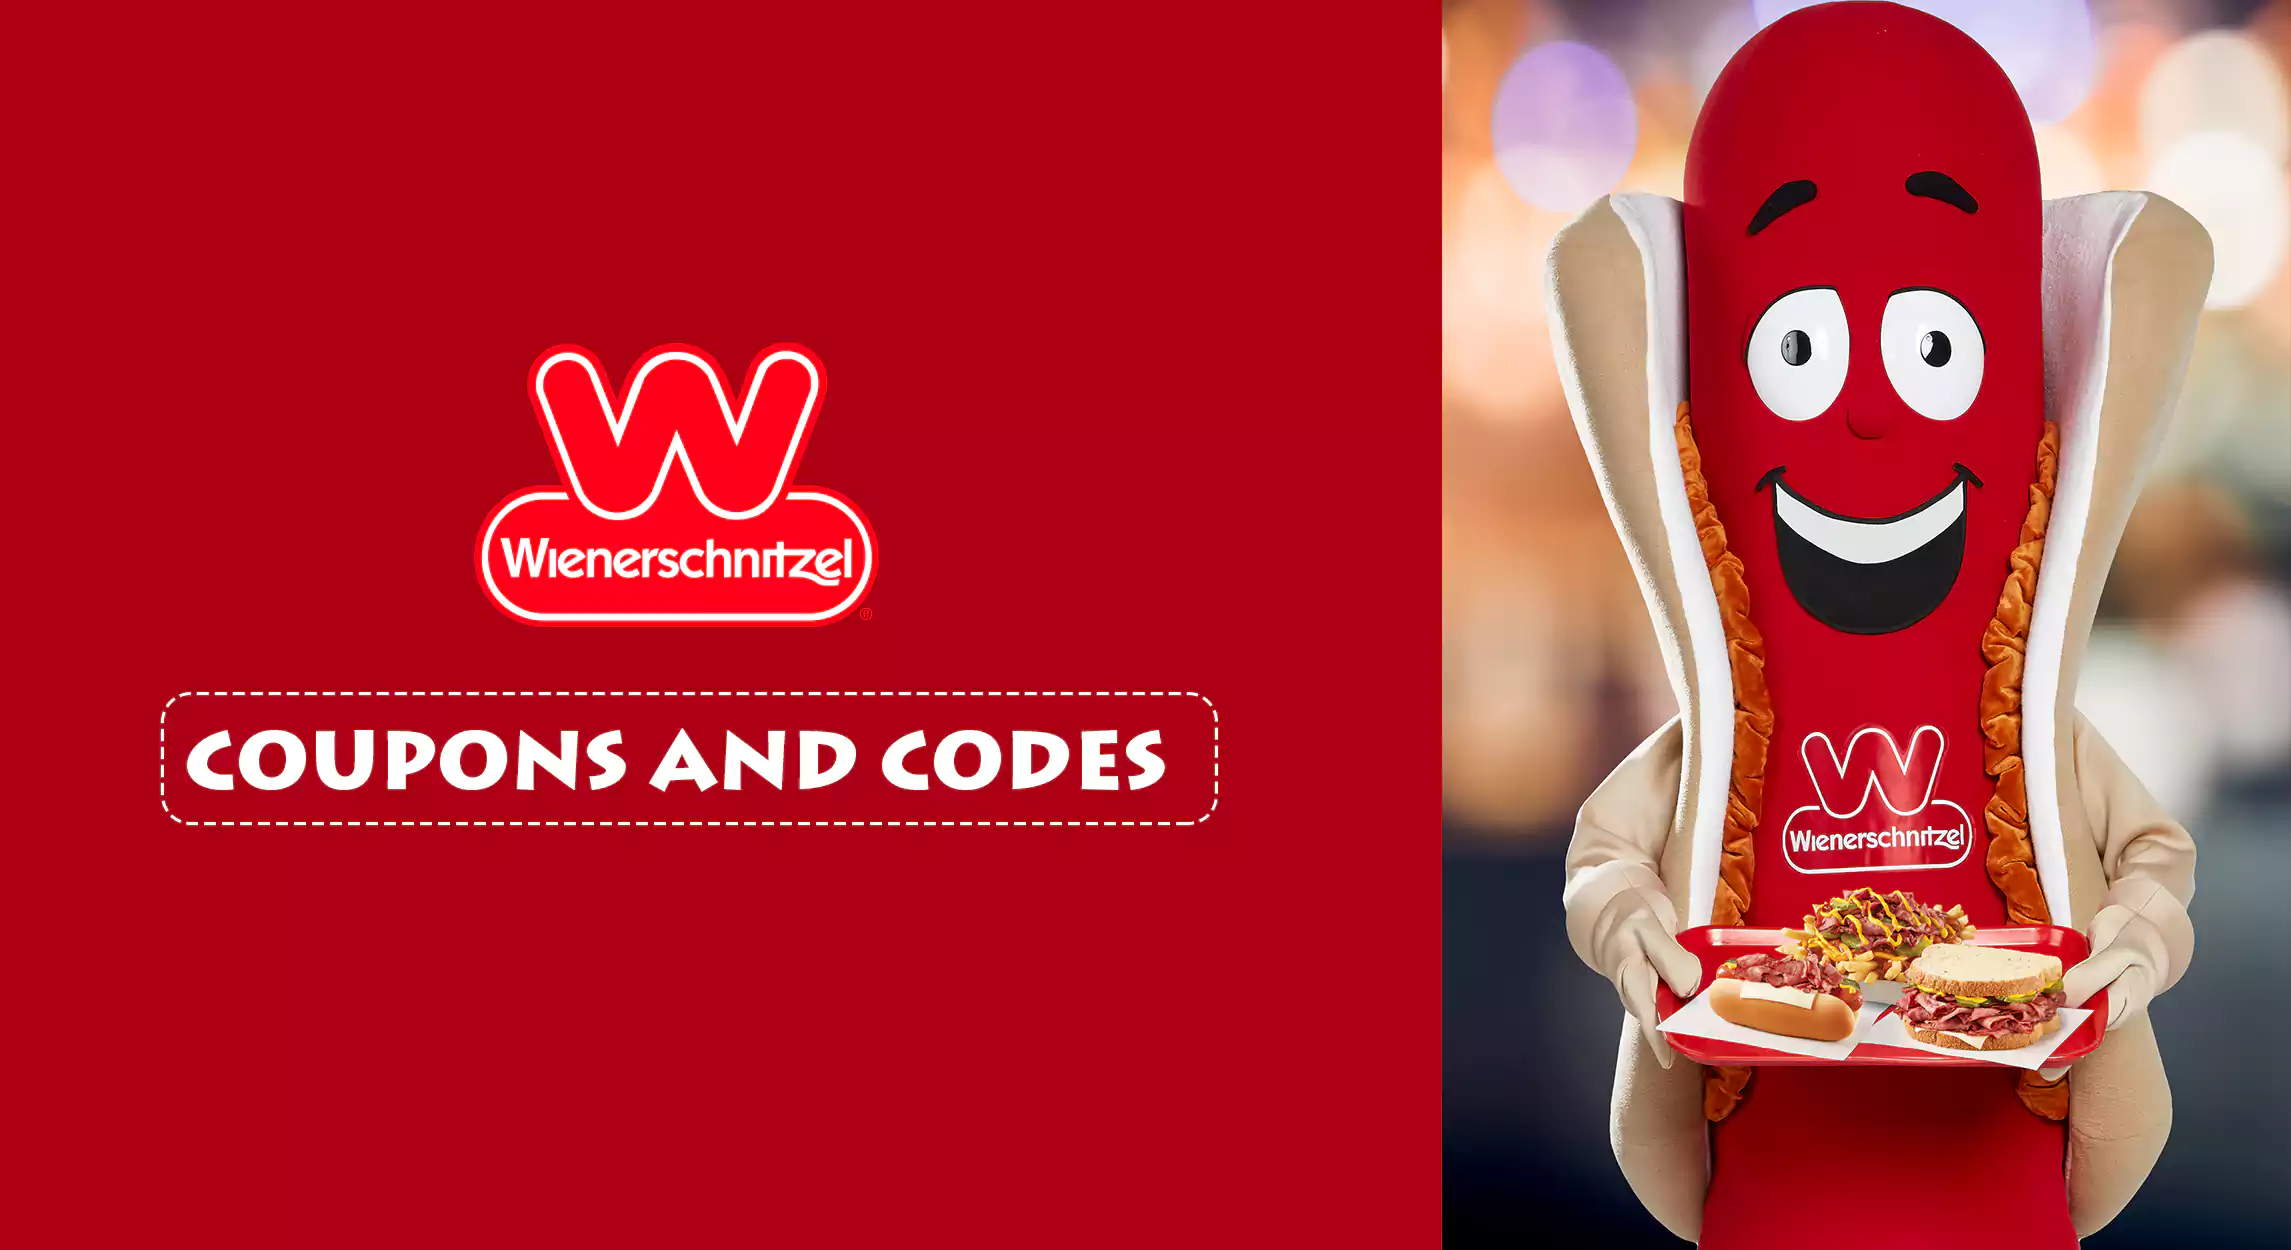 Wienerschnitzel Coupons and codes 